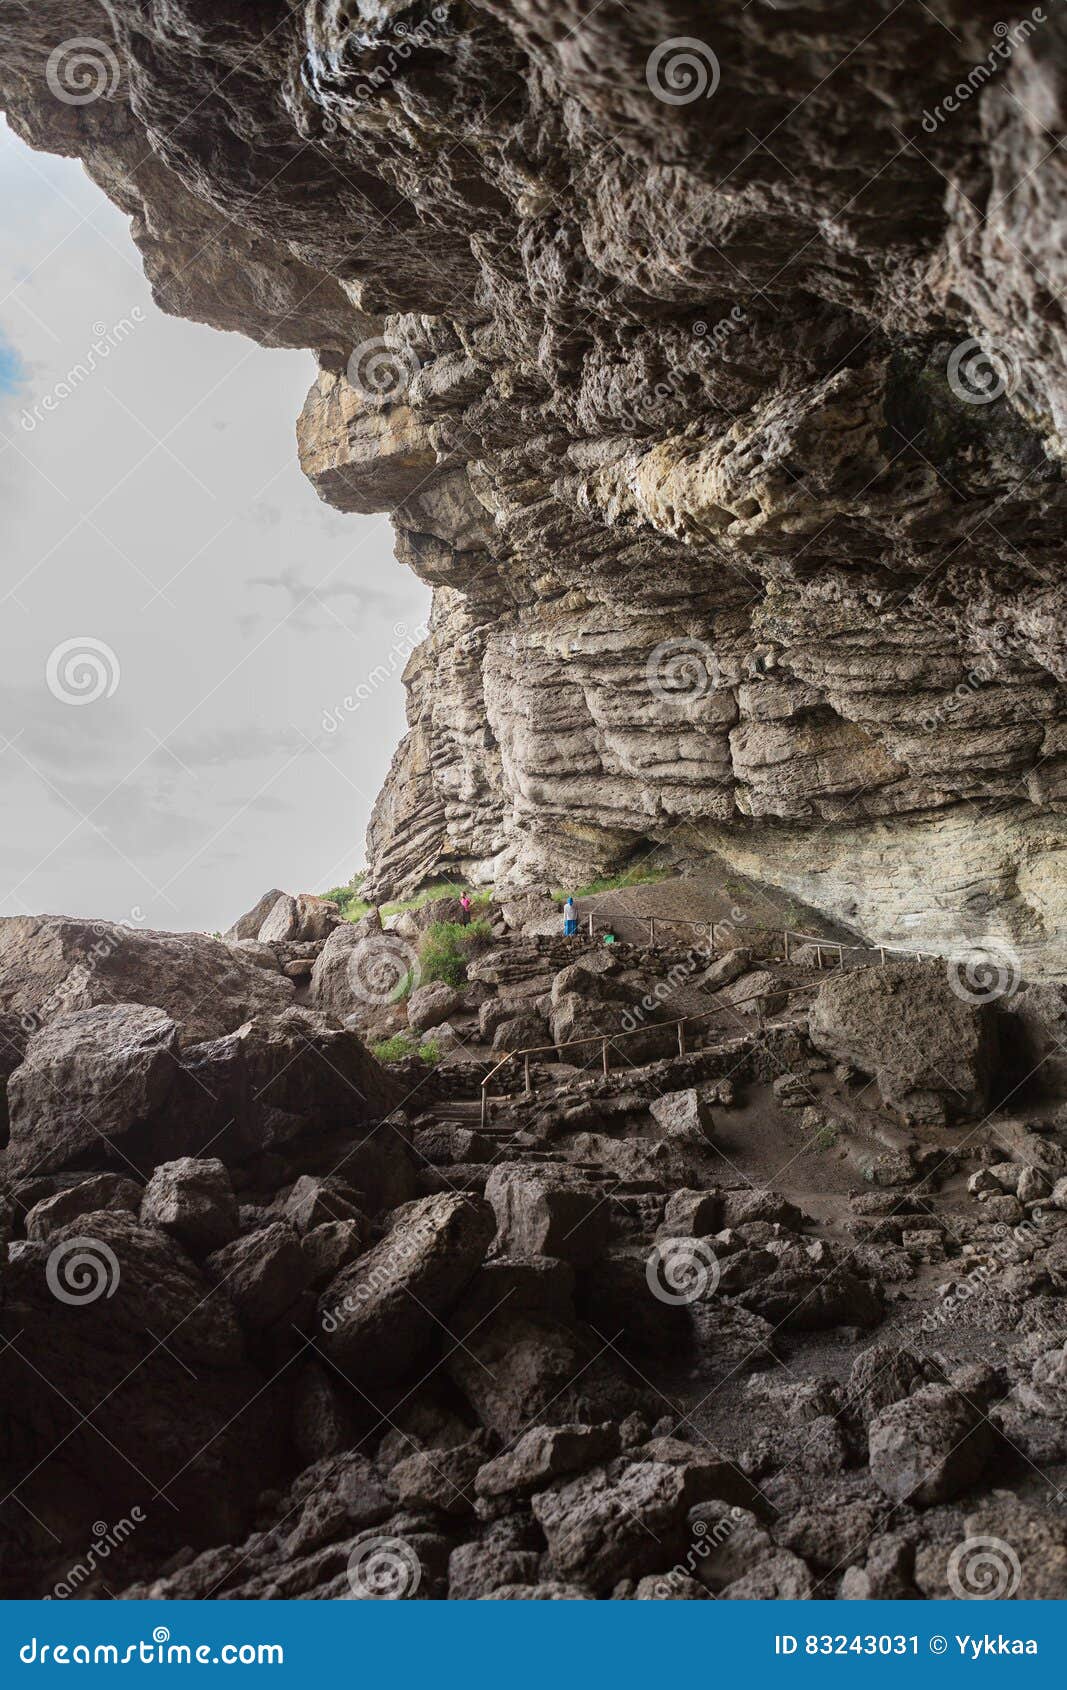 vinoteca golitsyn grotto chaliapin in mountain koba-kaya